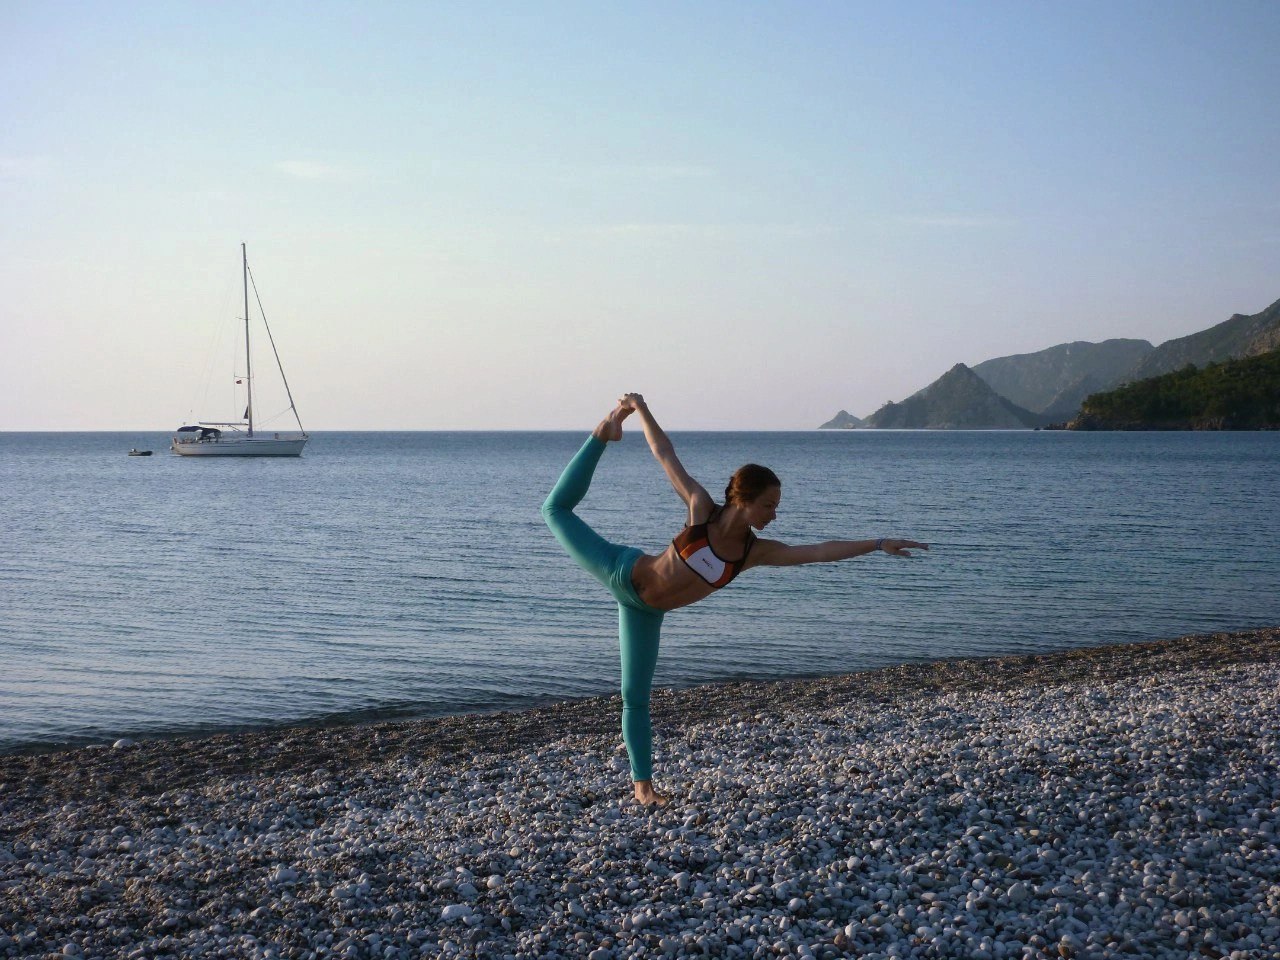 Йога тур в Анапу 7-12 мая. Медитации на берегу моря, дельфины и маки! (йога тур в мае, йога тур с детьми)